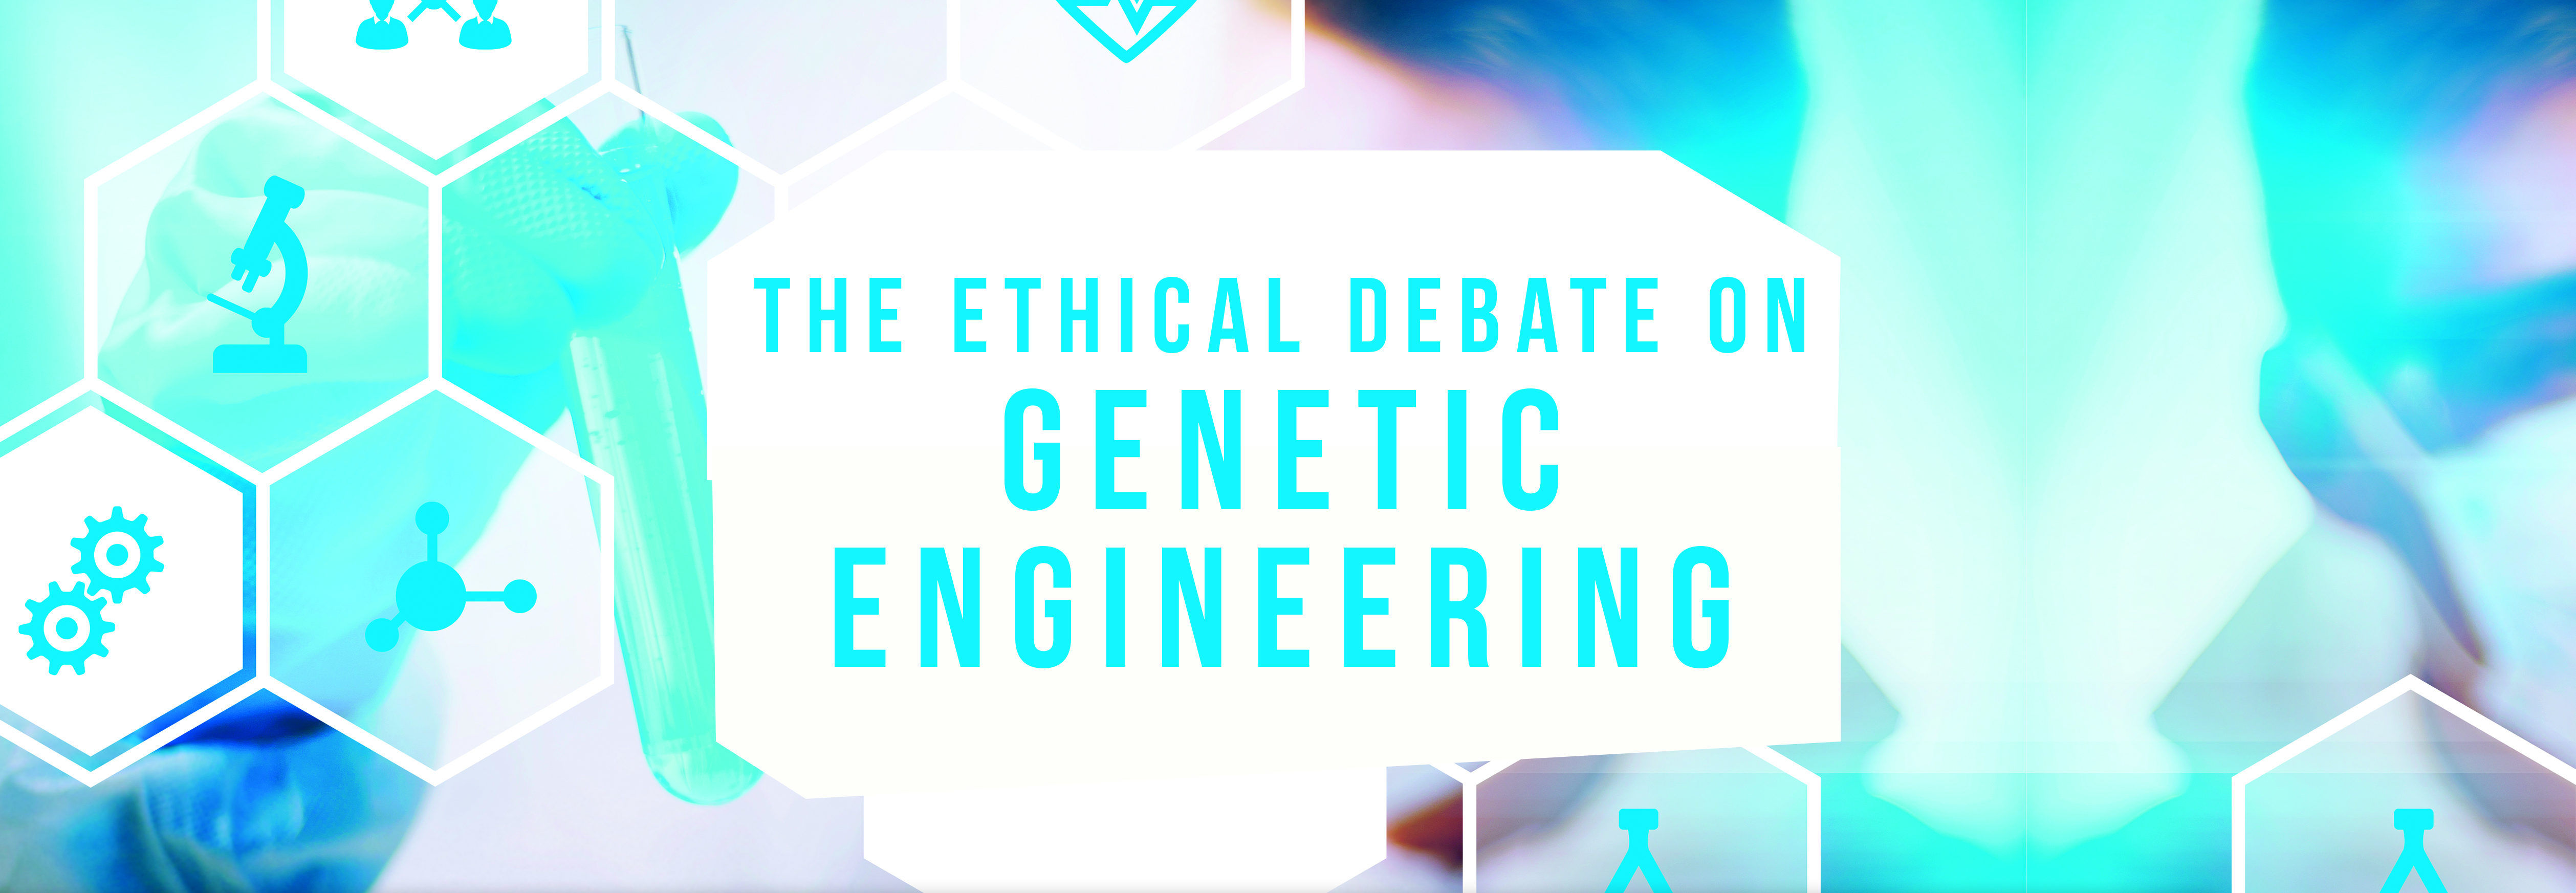 genetic engineering debate